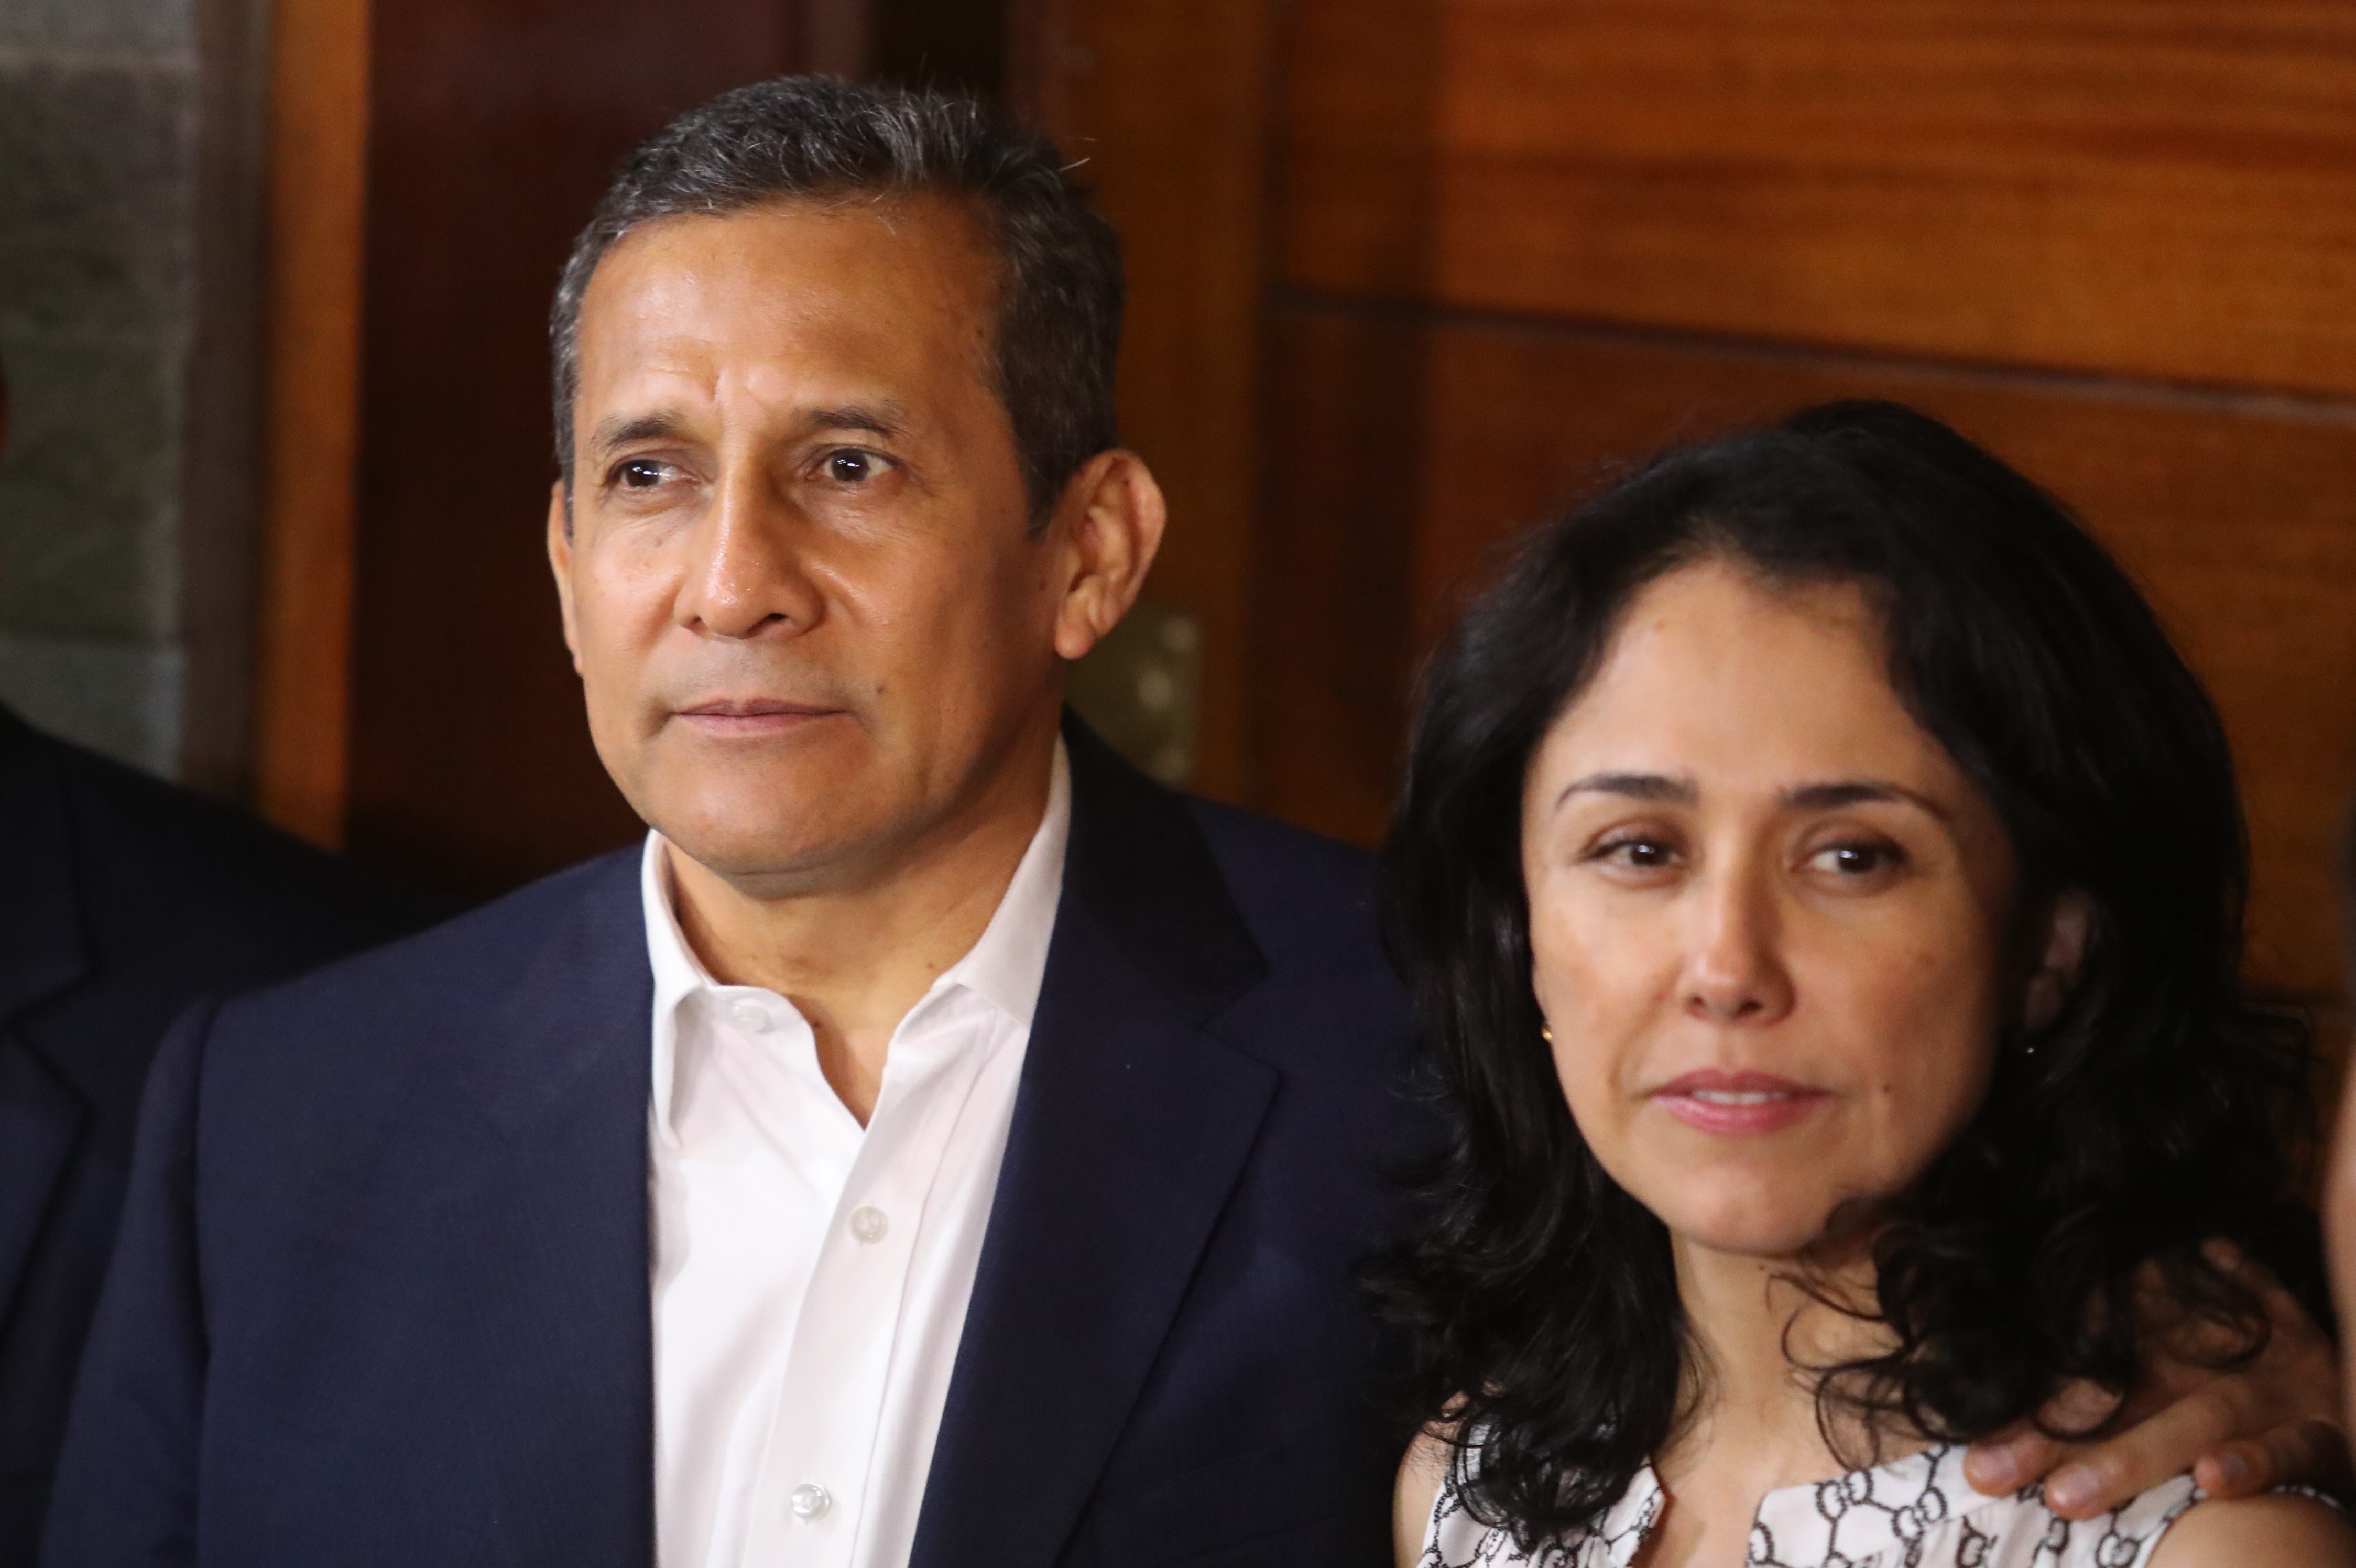 Un tribunal en Perú dictó prisión domiciliaria contra la esposa de Humala por el caso Odebrecht